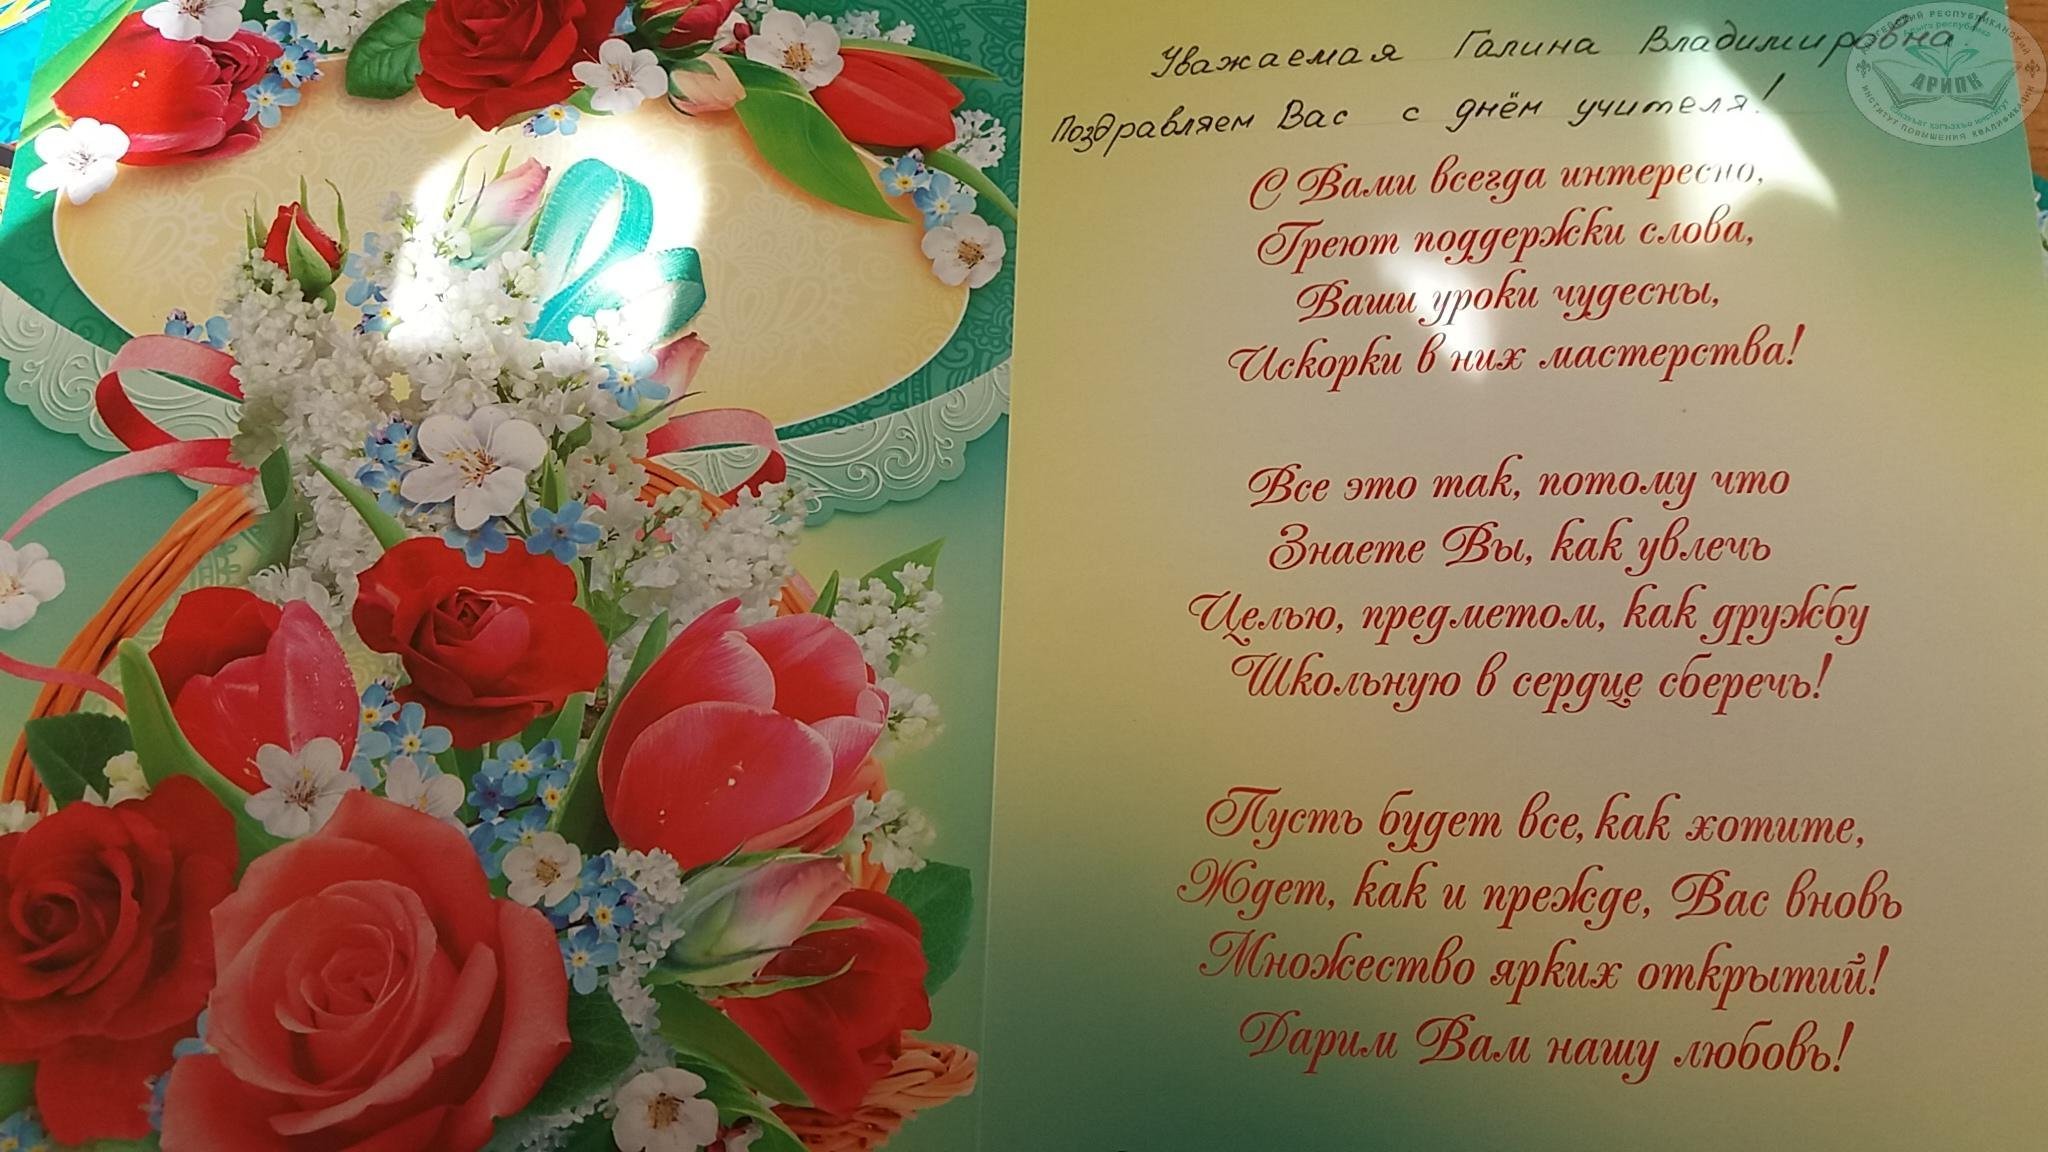 Открытки для женщины на татарском. Поздравление с днем рождения на татарском открытка. Поздравительные открытки на татарском языке. Поздравления с днём рождения на татарском языке. Поздравления с днём с днём рождения на татарском языке.